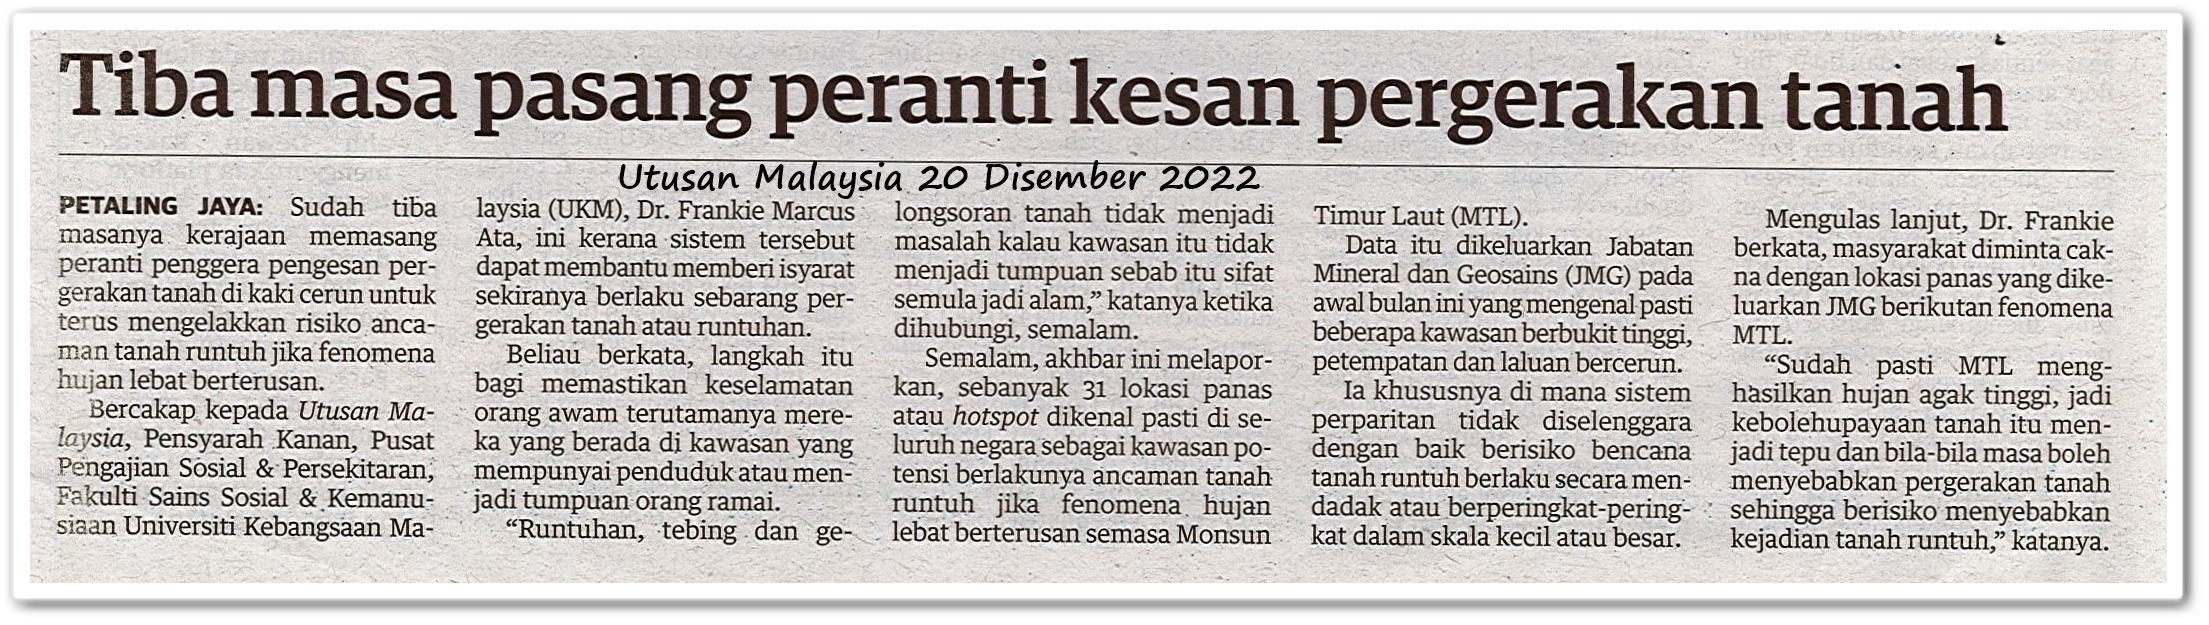 Tragedi tanah runtuh di Batang Kali ; Tiba masa pasang peranti kesan pergerakan tanah - Keratan akhbar Utusan Malaysia 20 Disember 2022